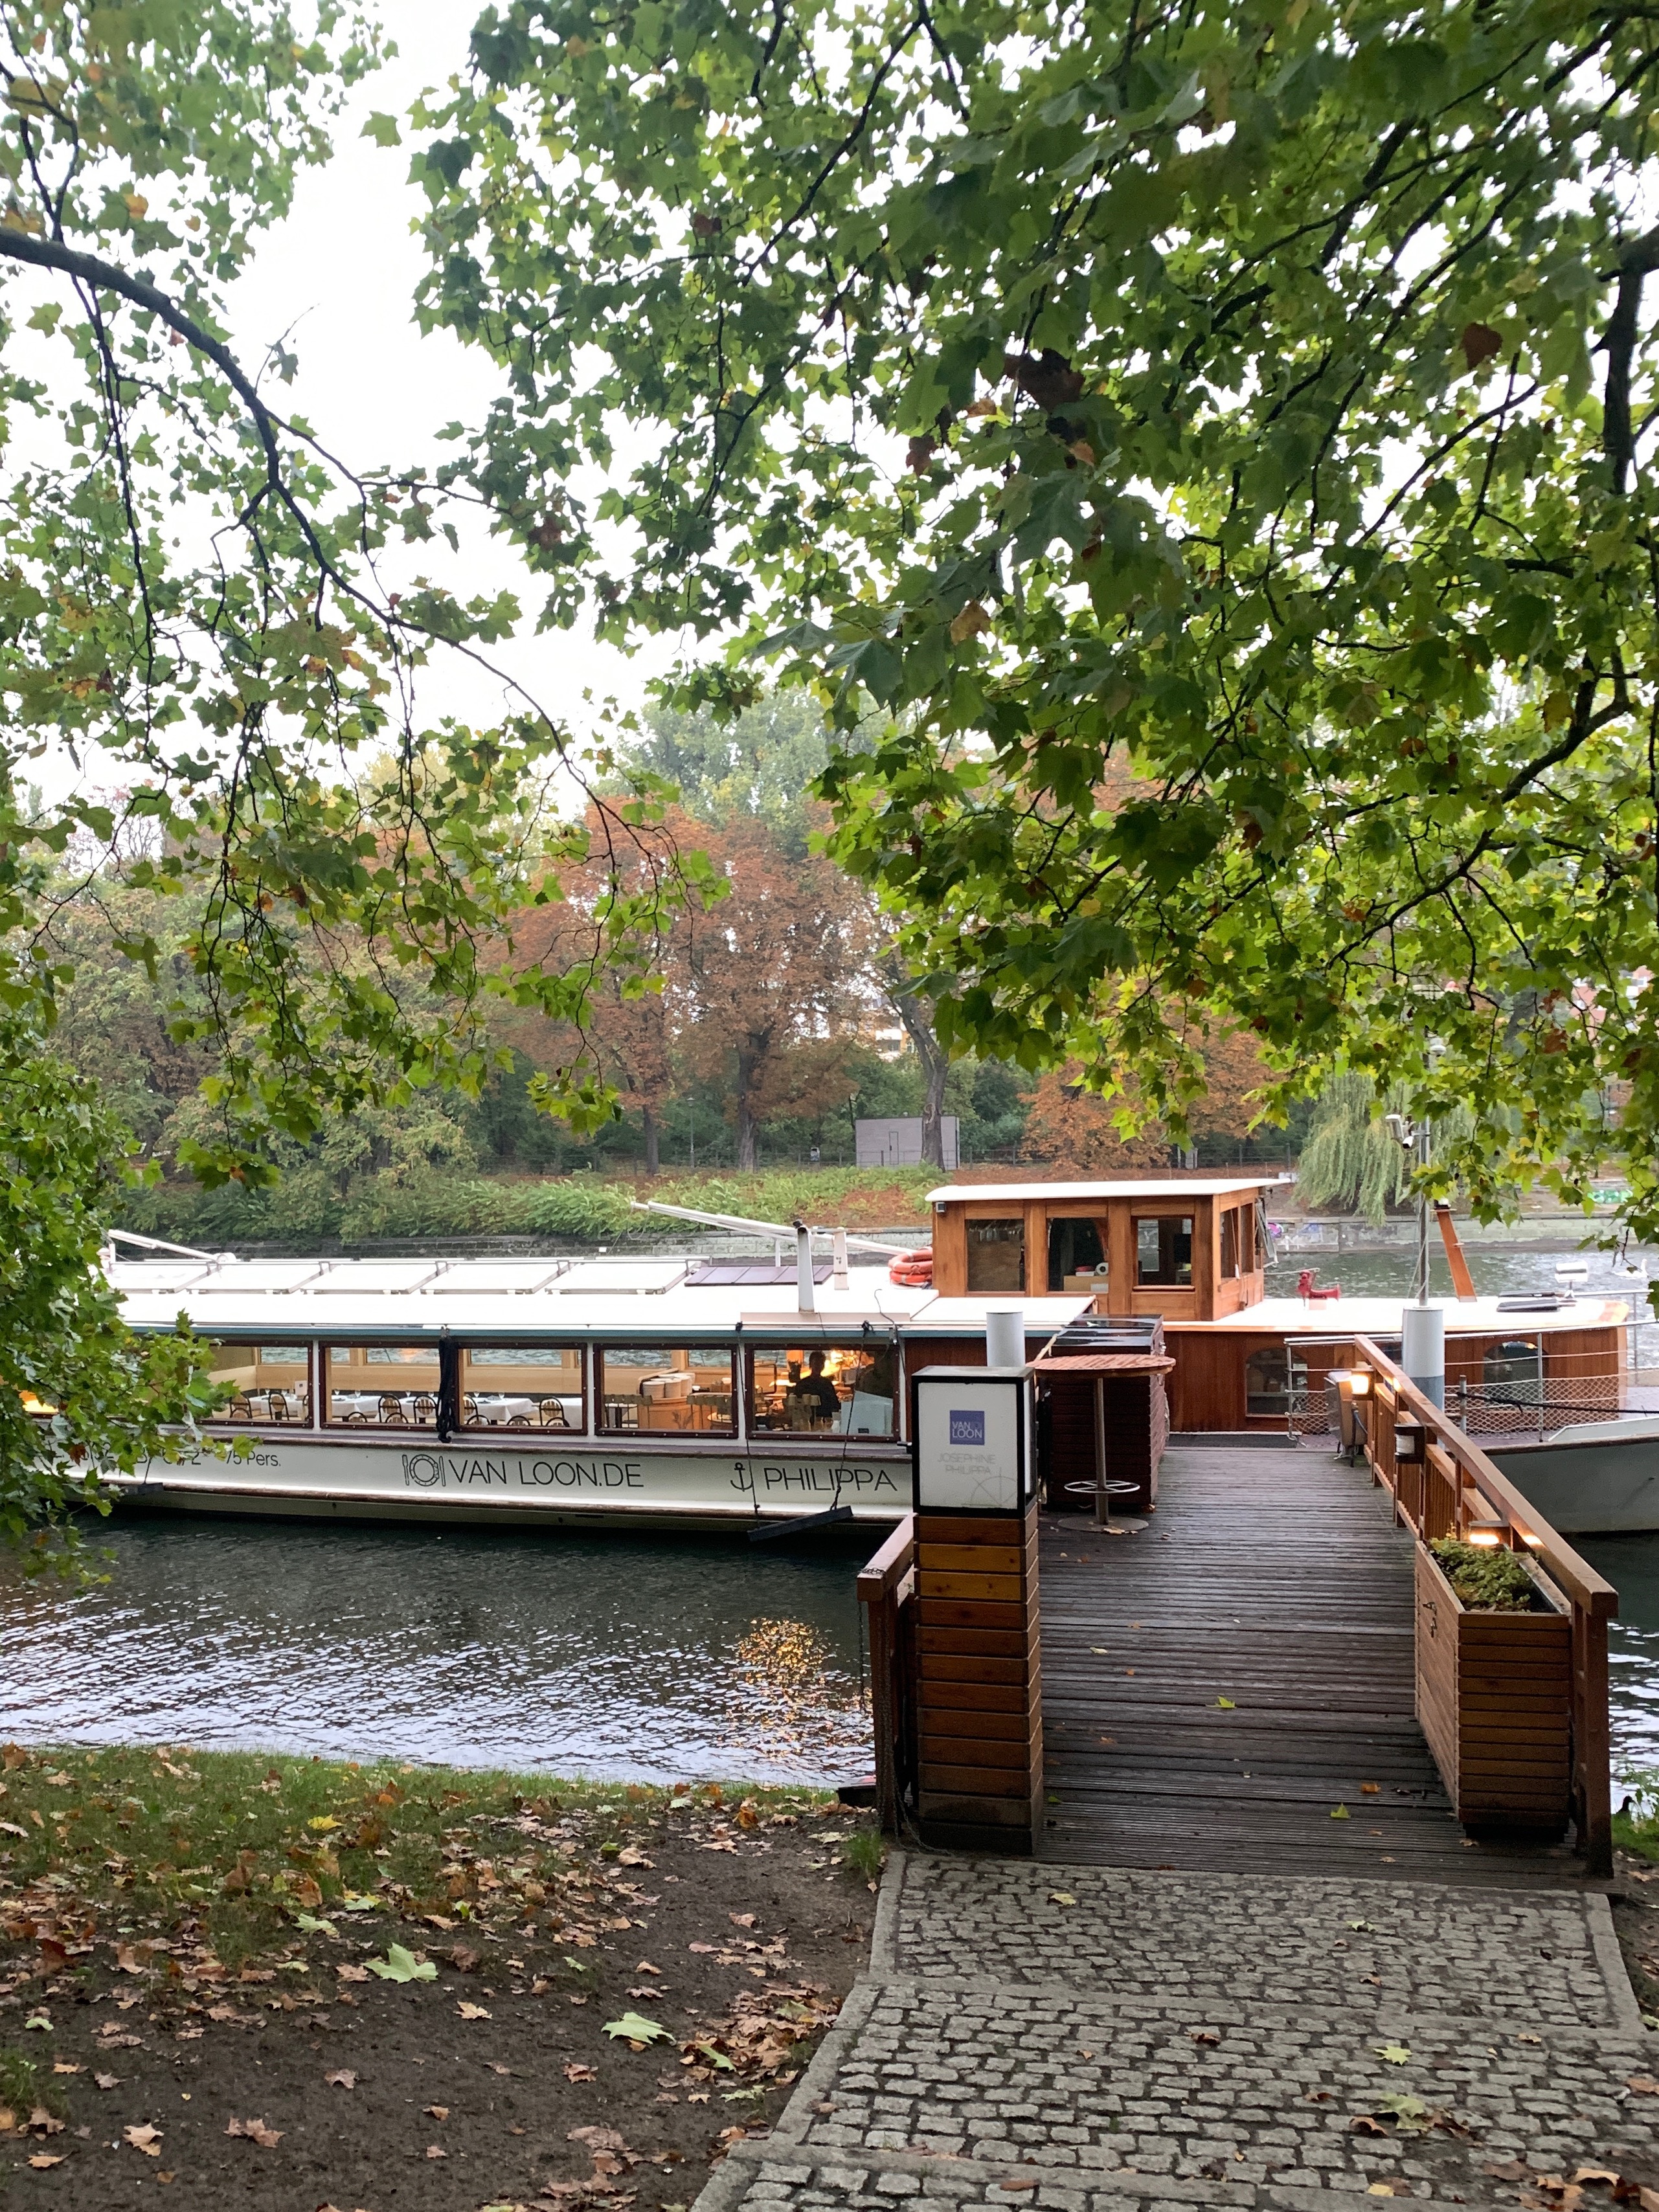 Van Loon restaurant boat